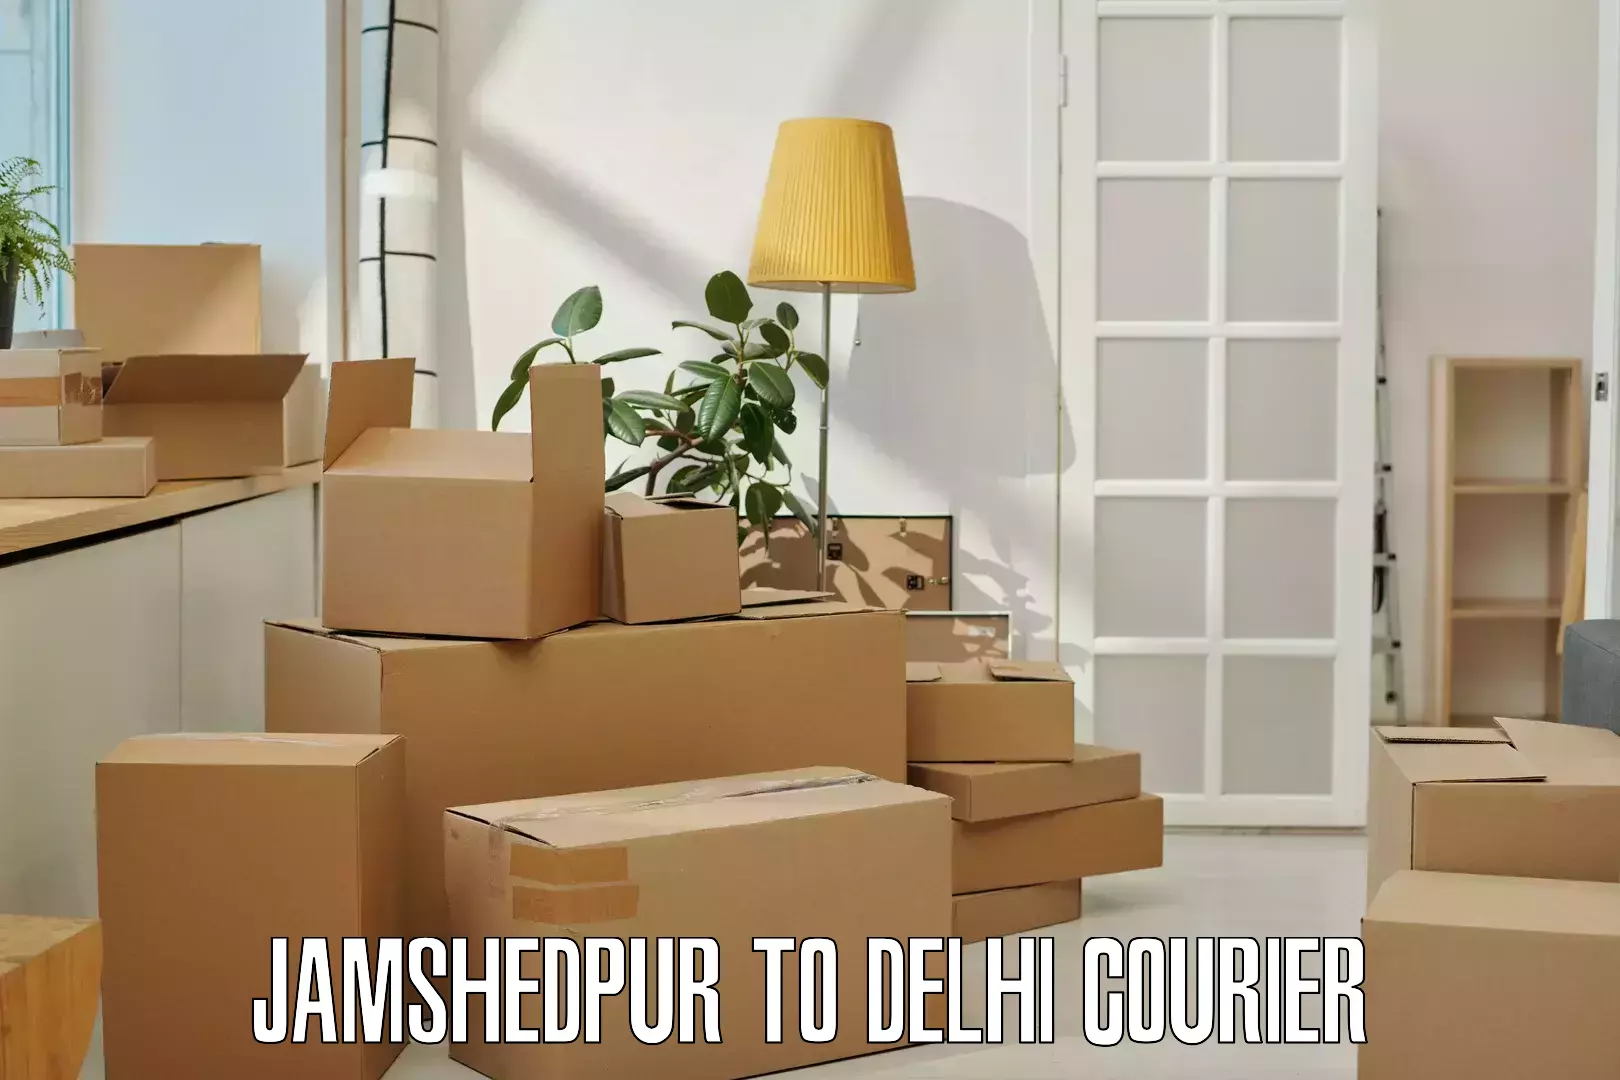 Express logistics providers Jamshedpur to Delhi